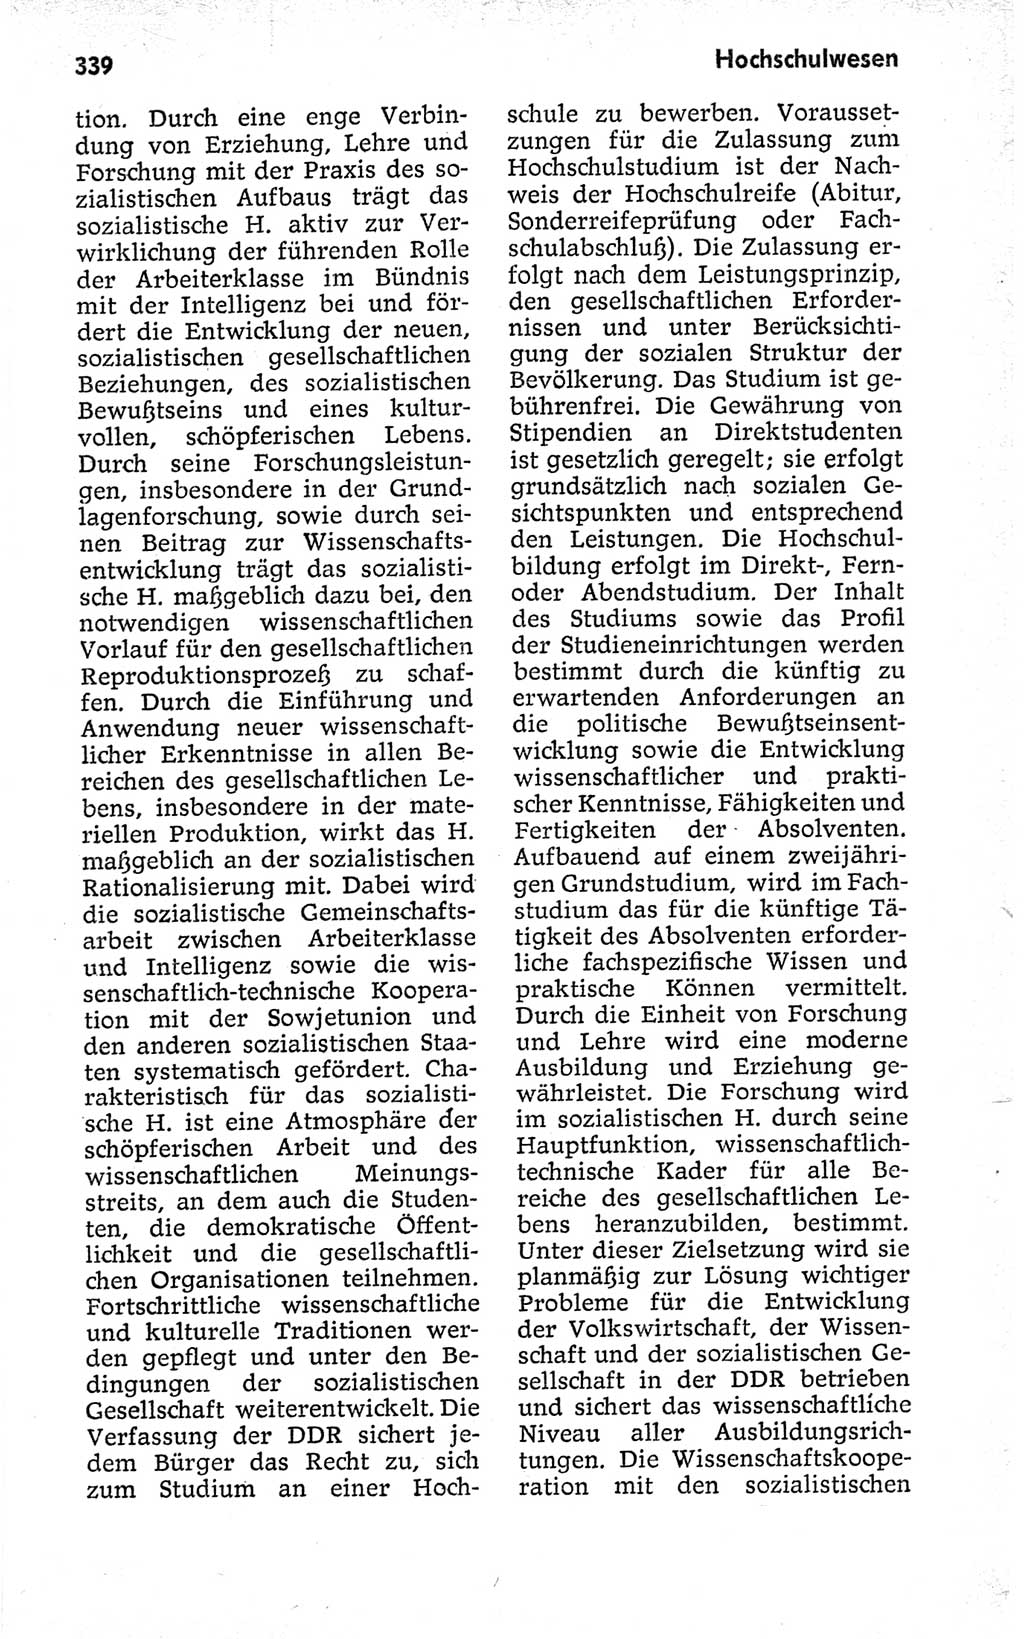 Kleines politisches Wörterbuch [Deutsche Demokratische Republik (DDR)] 1973, Seite 339 (Kl. pol. Wb. DDR 1973, S. 339)